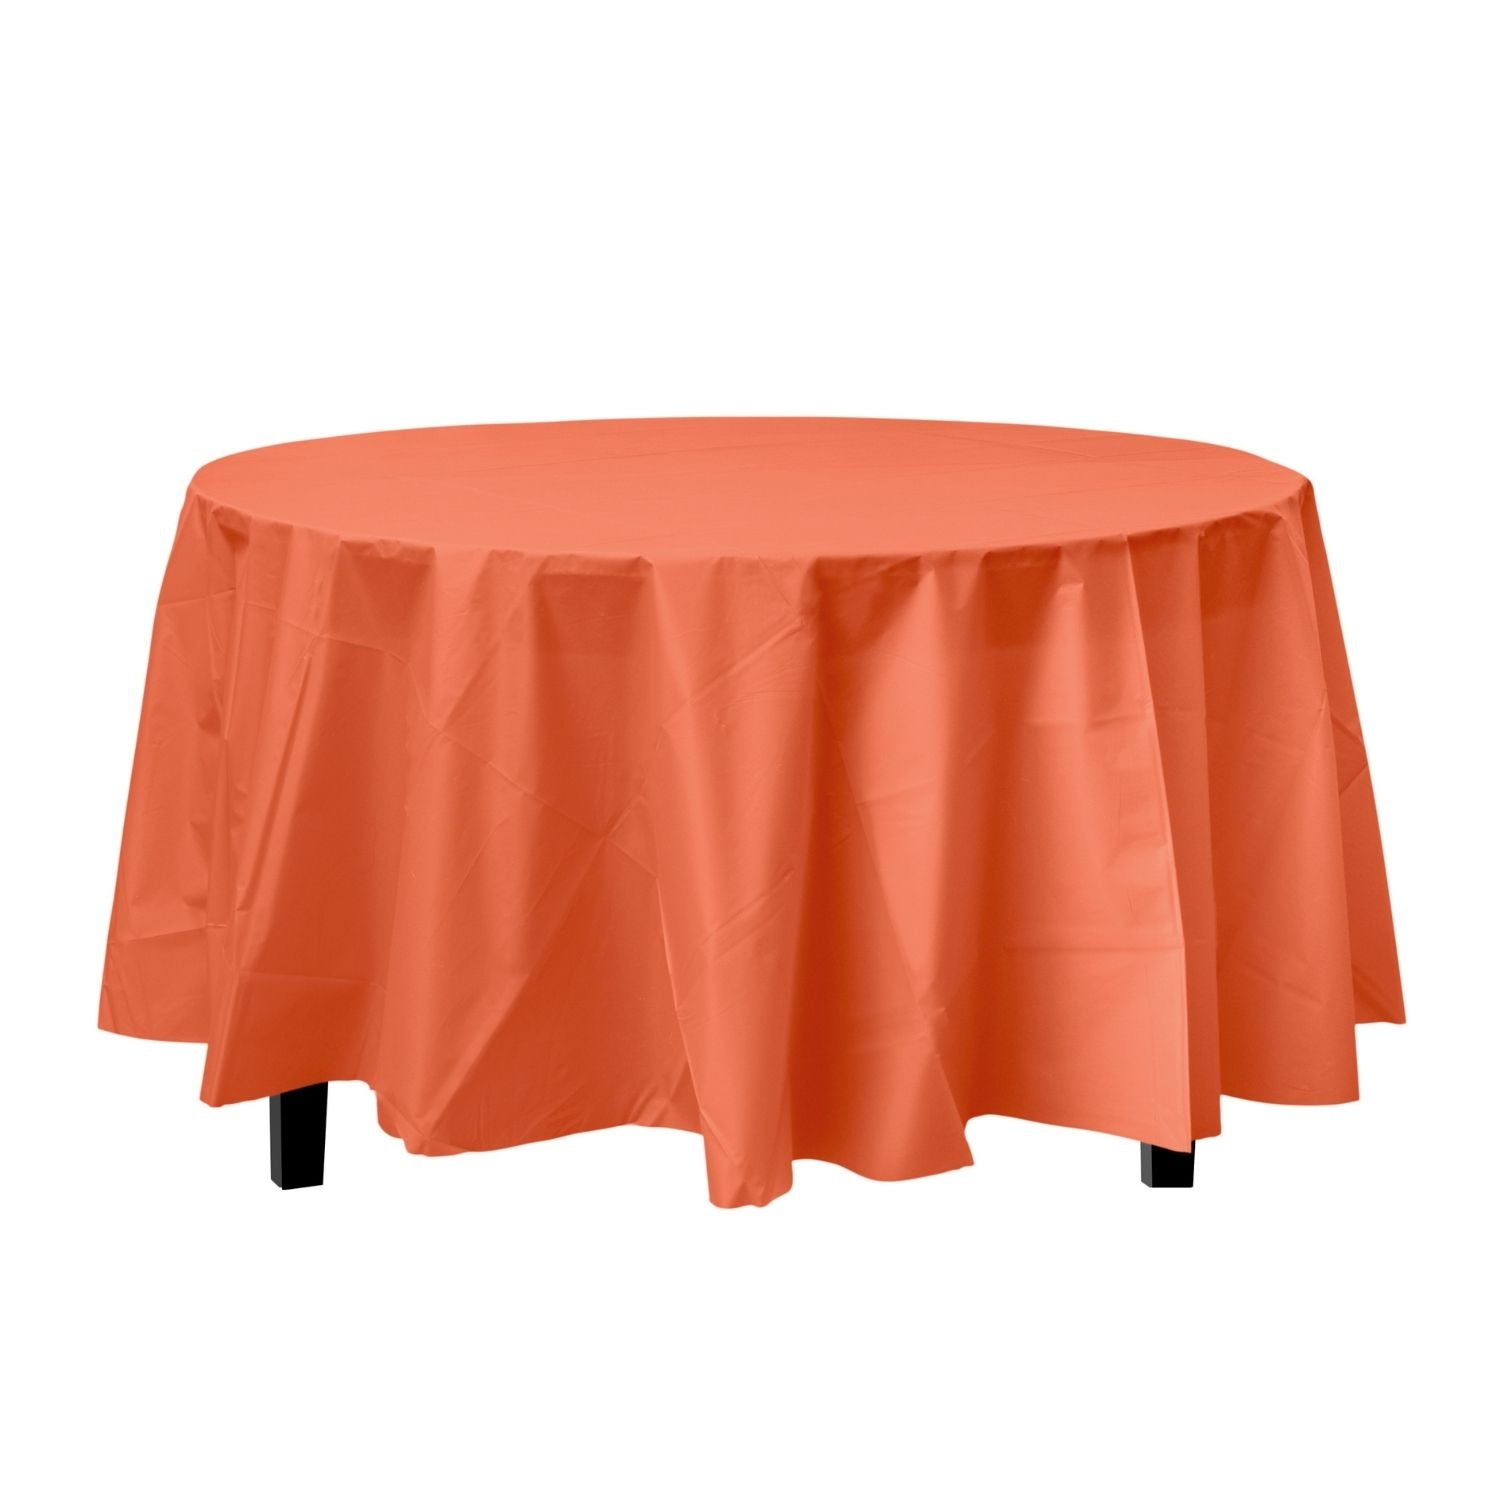 Orange Round Plastic Tablecloth | 48 Count